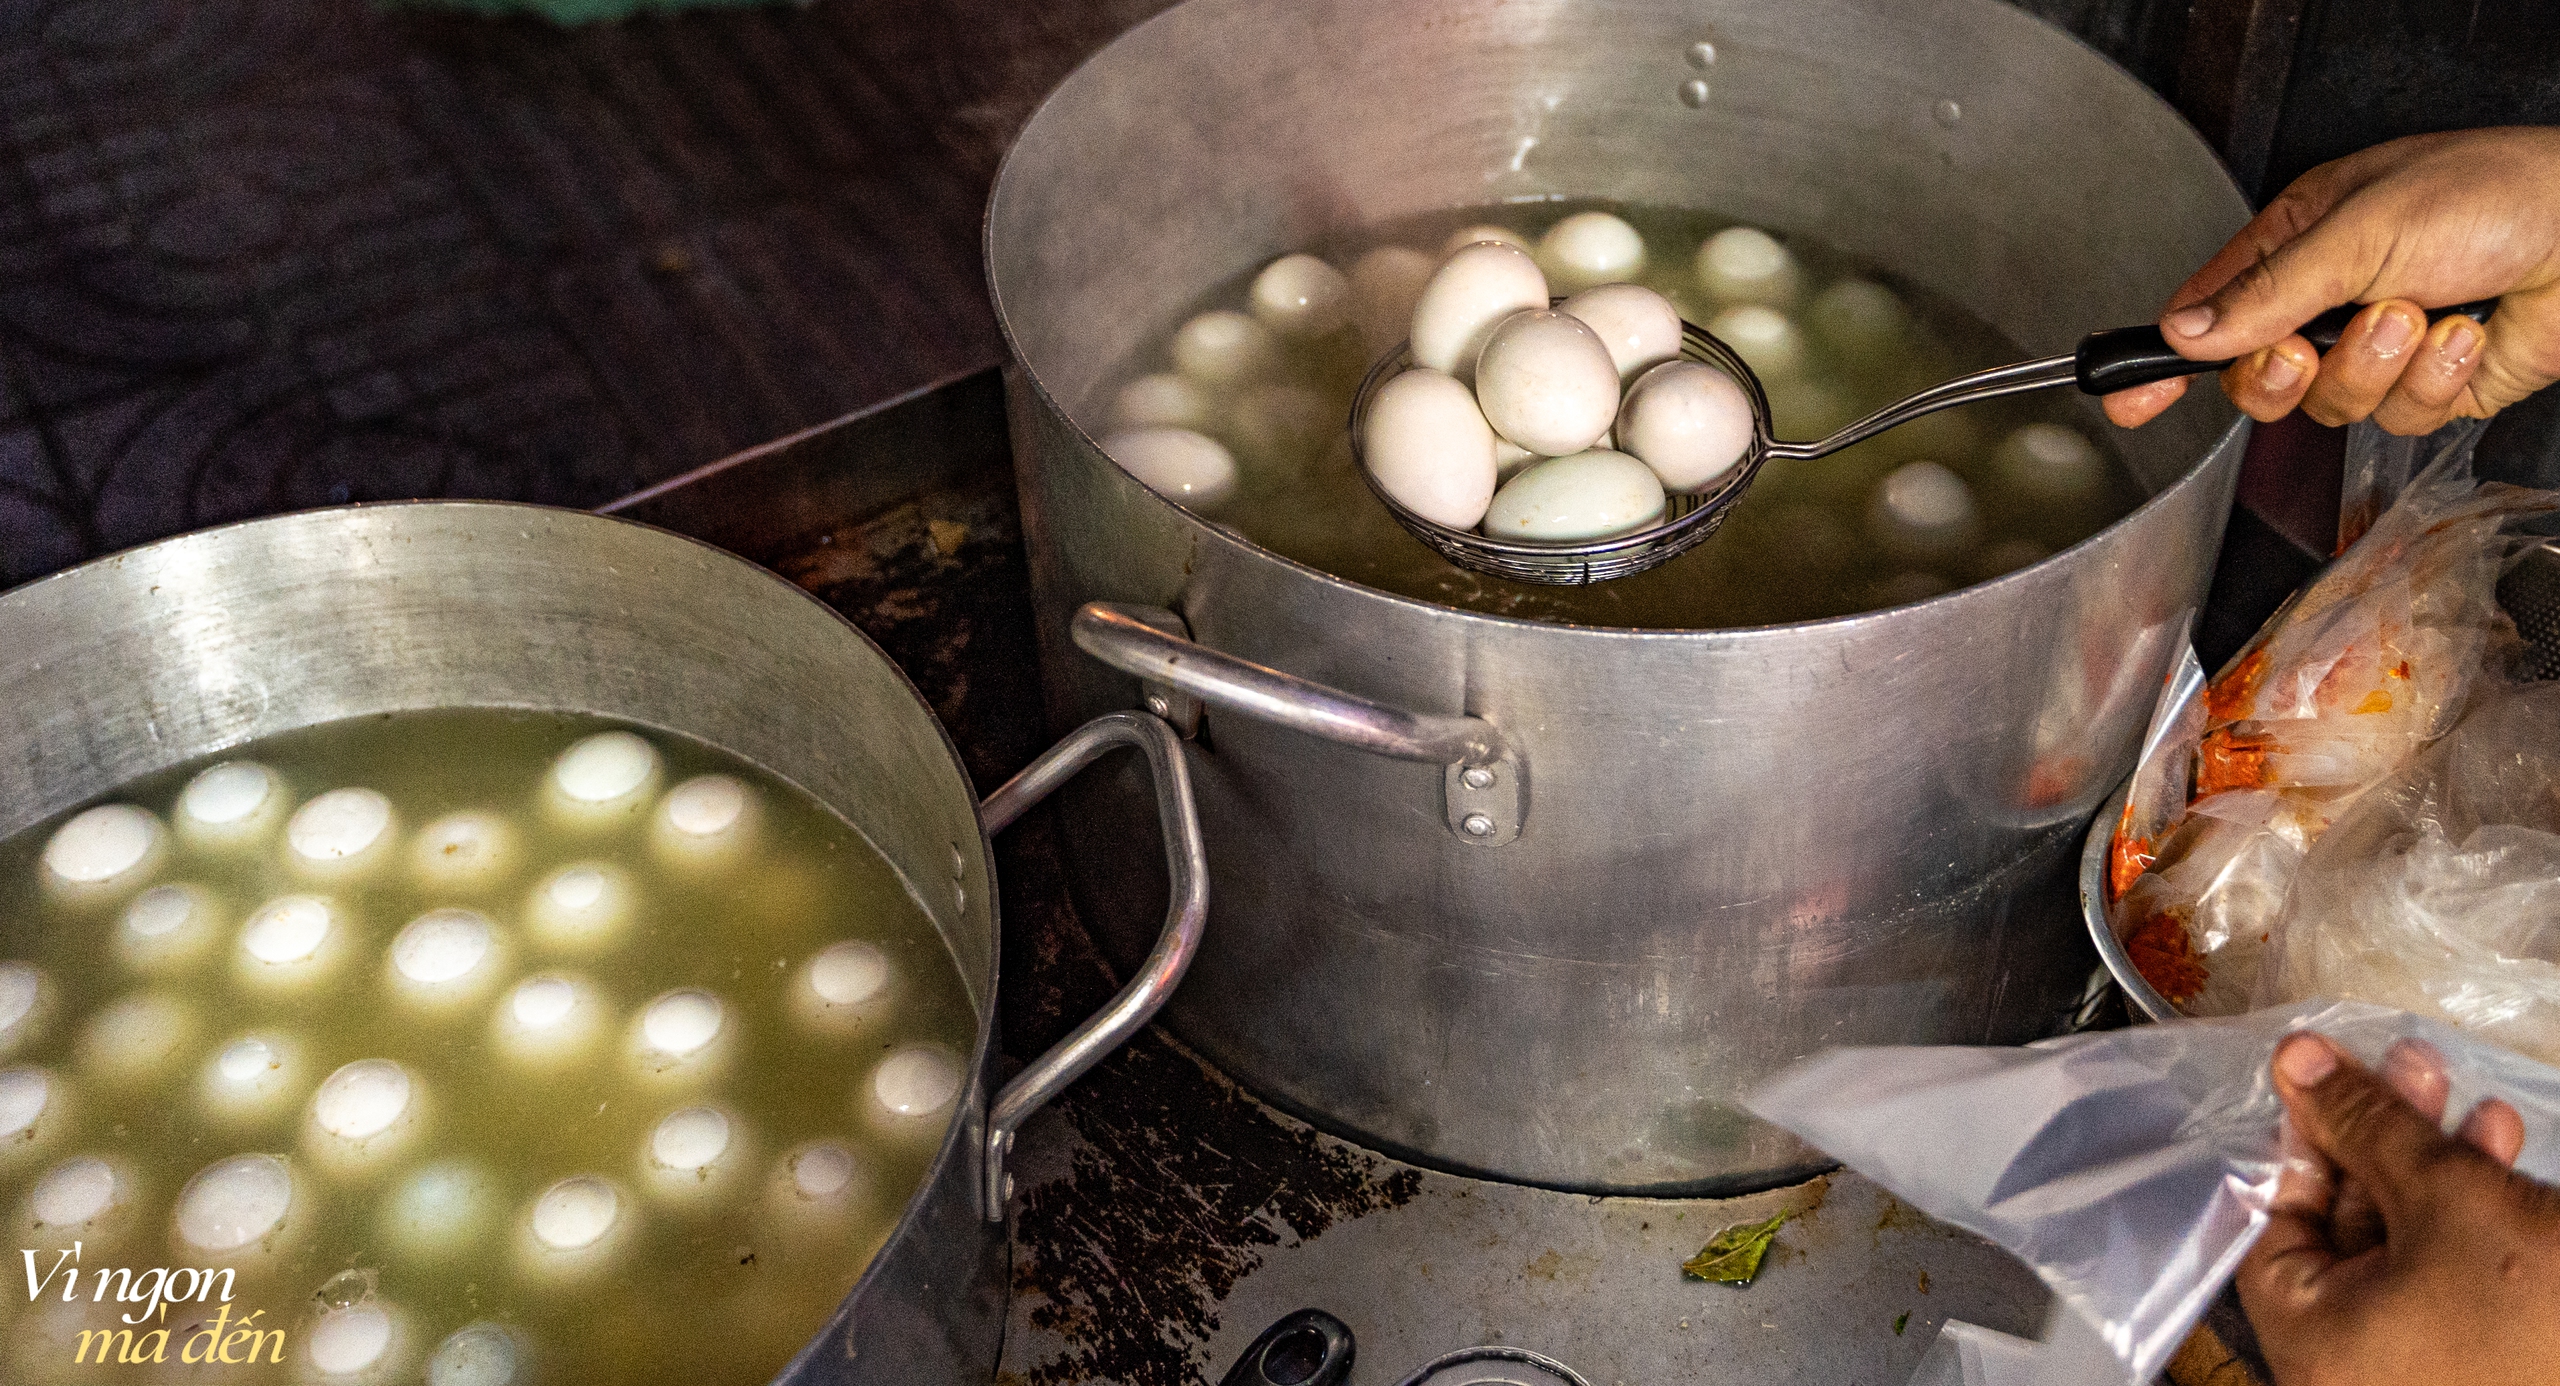 Bán hột vịt lộn mua được nhà: Cửa tiệm mỗi ngày bán hơn 1.000 trứng, bí quyết từ việc luộc bằng nước dừa và ăn cùng muối tiêu xay &quot;không đụng hàng&quot; - Ảnh 3.